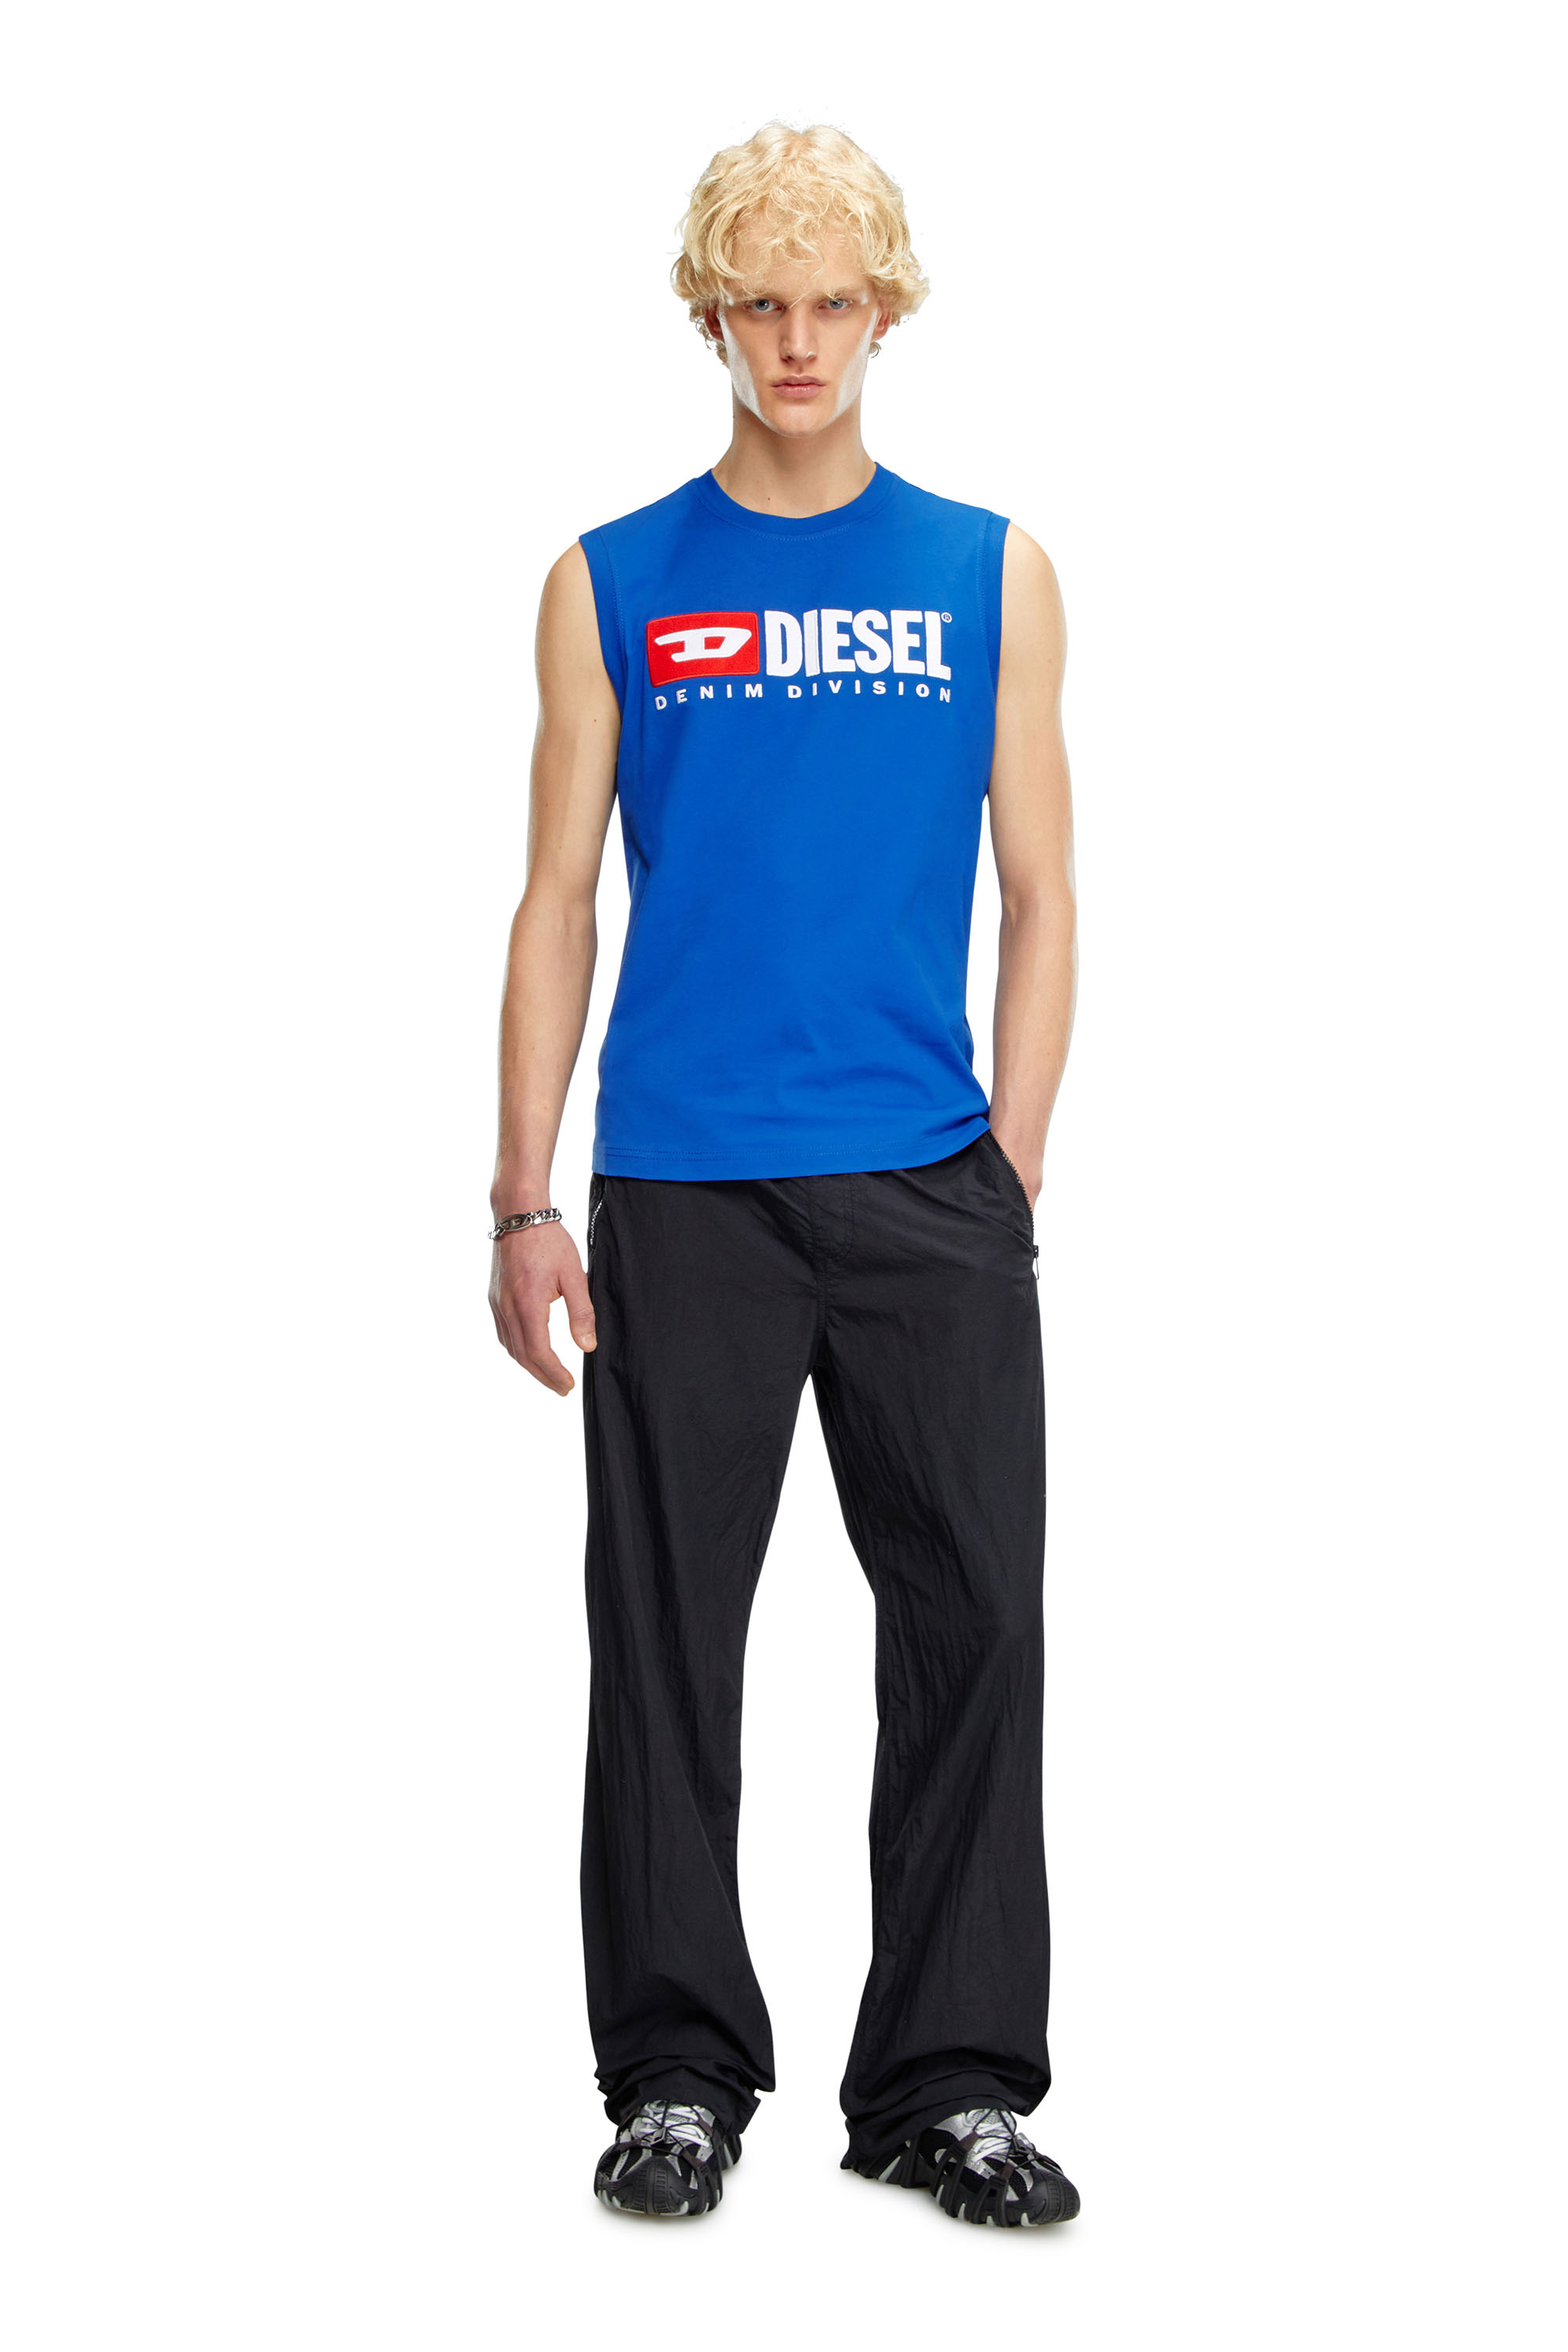 Diesel - T-ISCO-DIV, Hombre Camiseta sin mangas con logotipo estampado en el pecho in Azul marino - Image 3